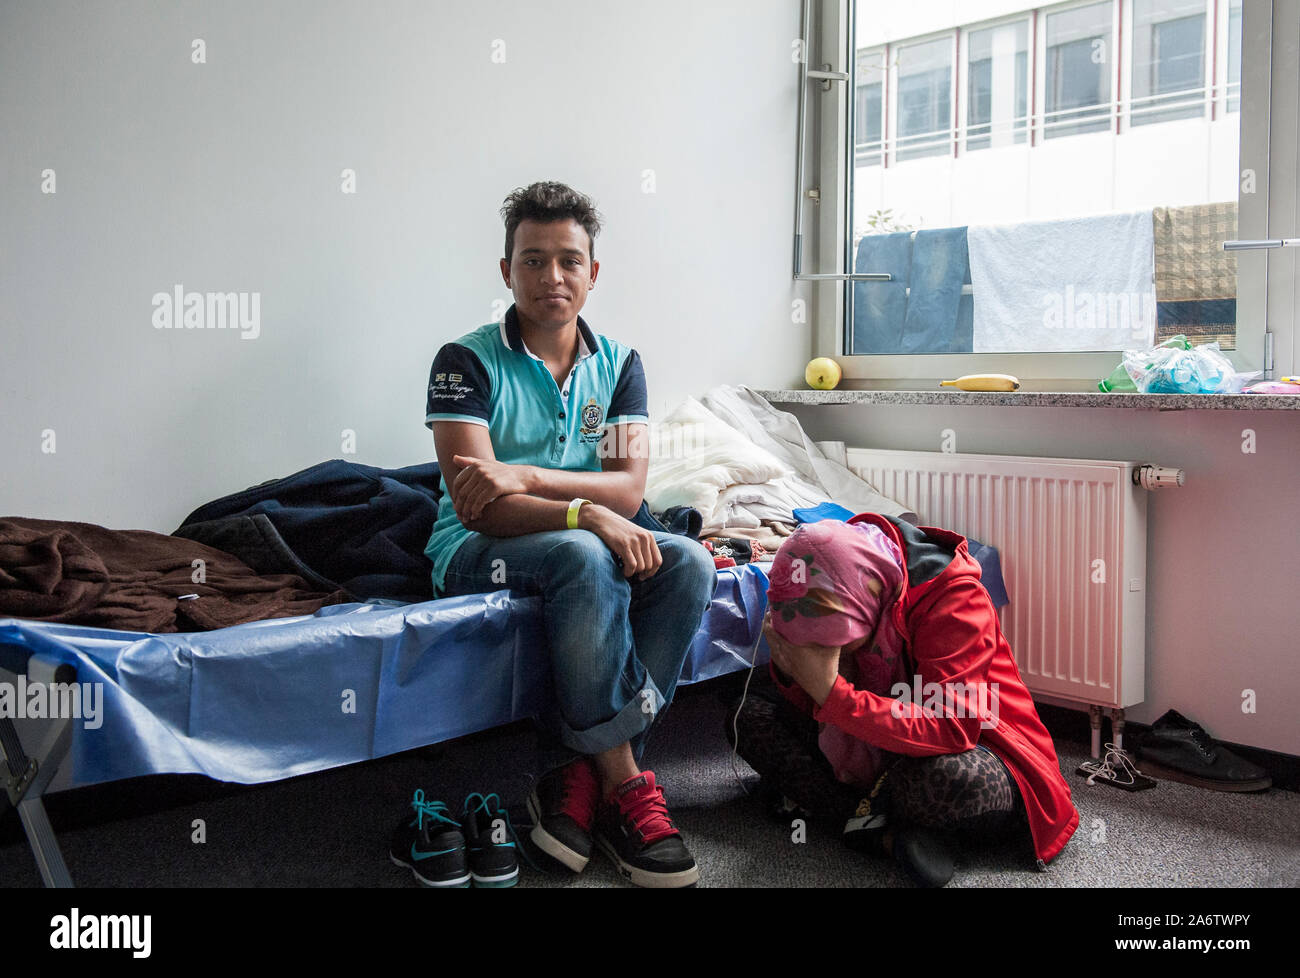 Munich-Germany- 22 septembre 2015 : à partir de la Syrie dans le premier centre d'accueil pour réfugiés à Riem, Munich. Banque D'Images